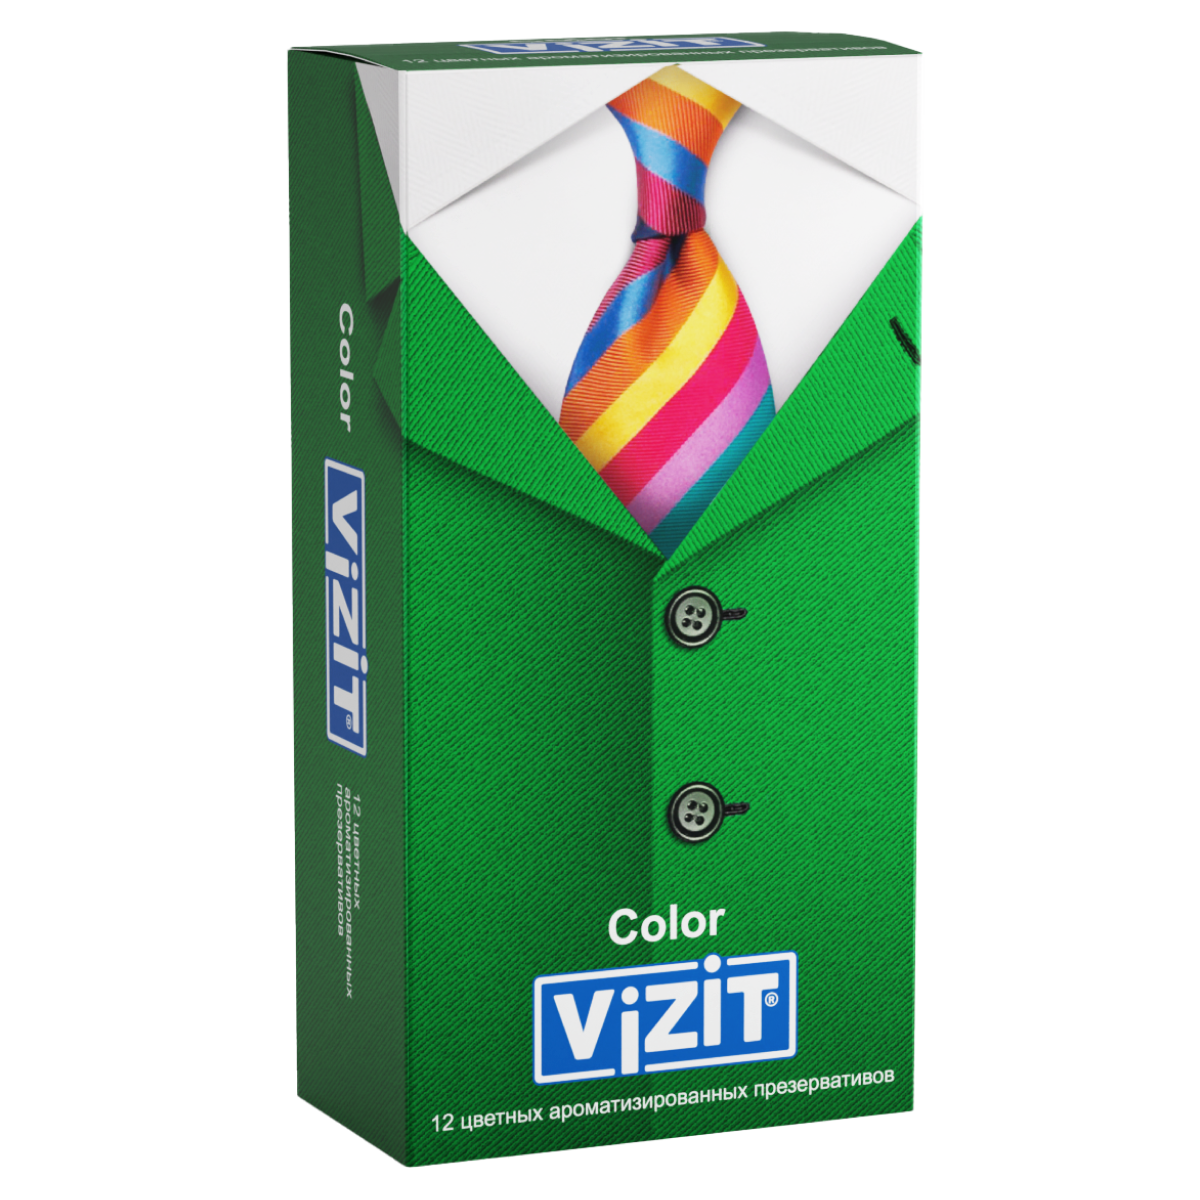 Презервативы VIZIT Color Цветные ароматизированные 12 шт. (Richter), разноцветный, латекс  - купить